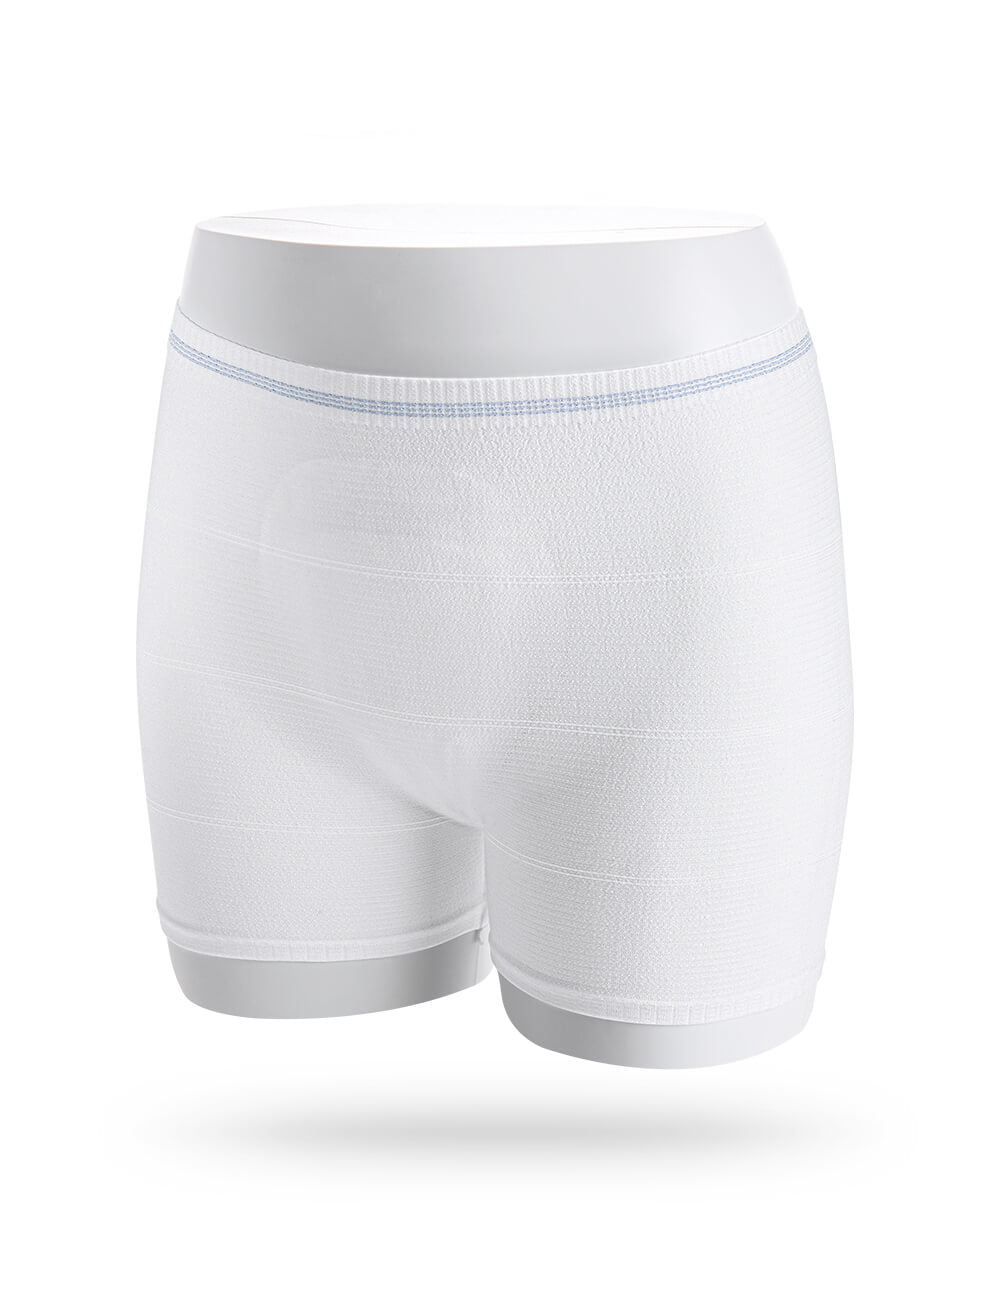 Postpartum Underwear